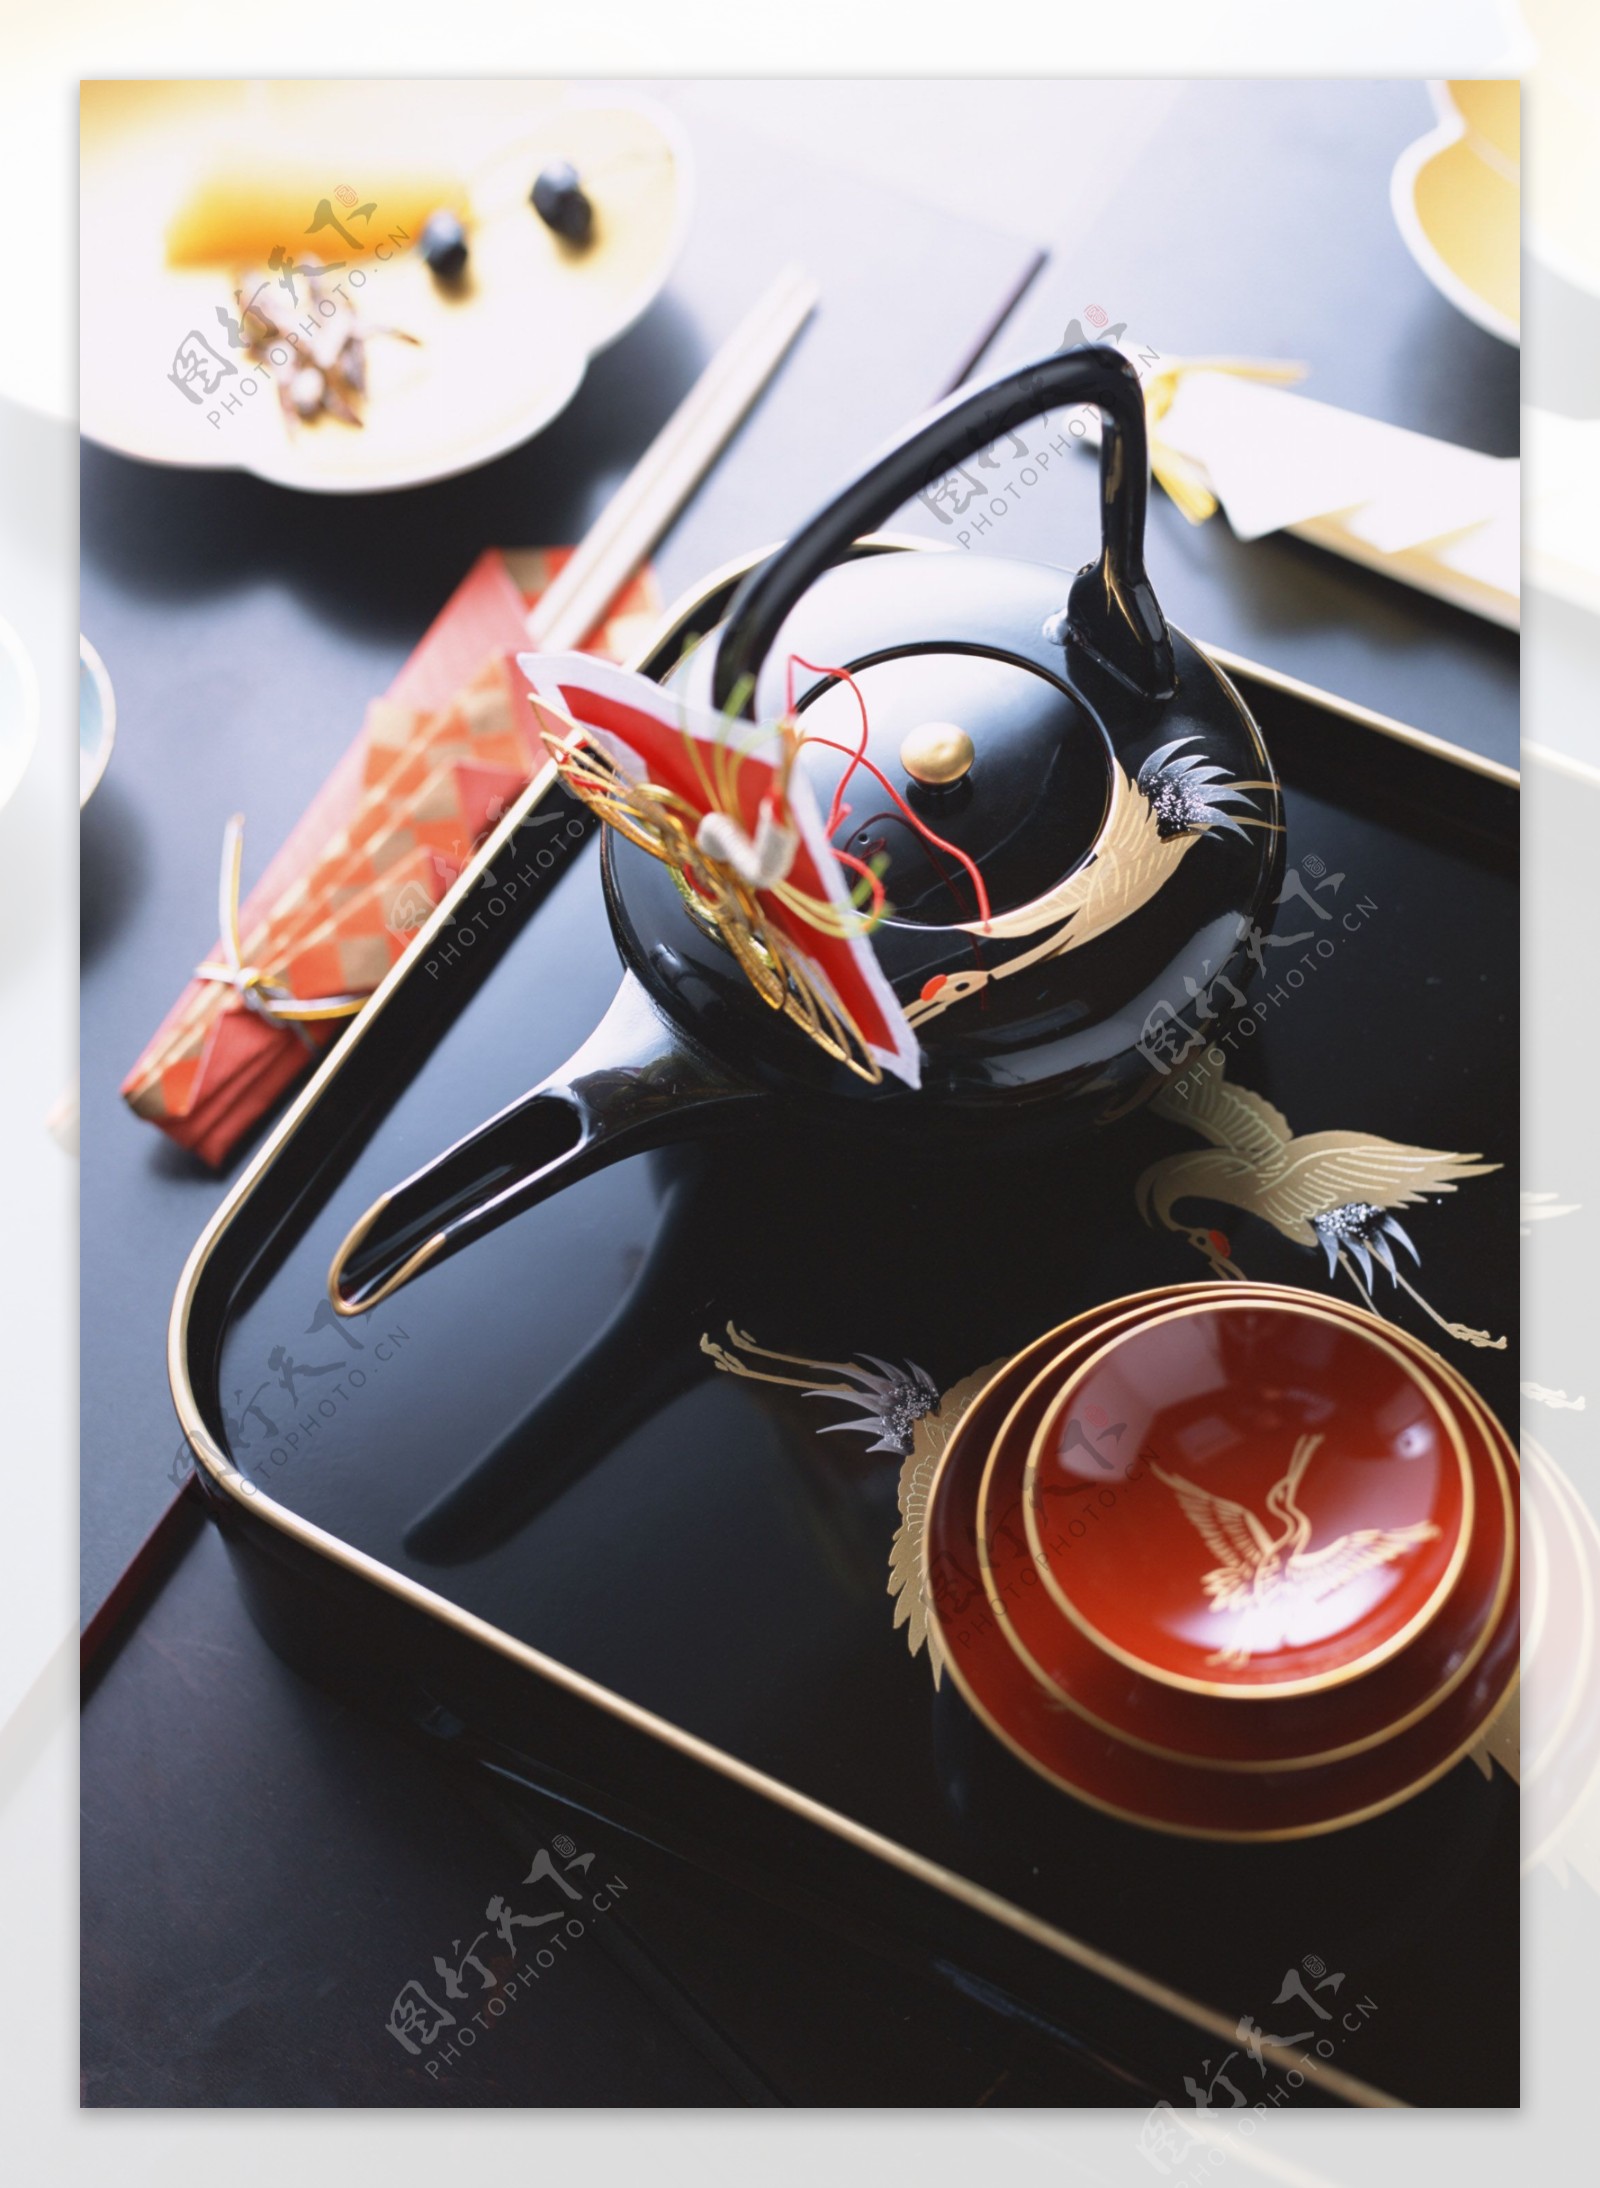 茶壶和碗碟